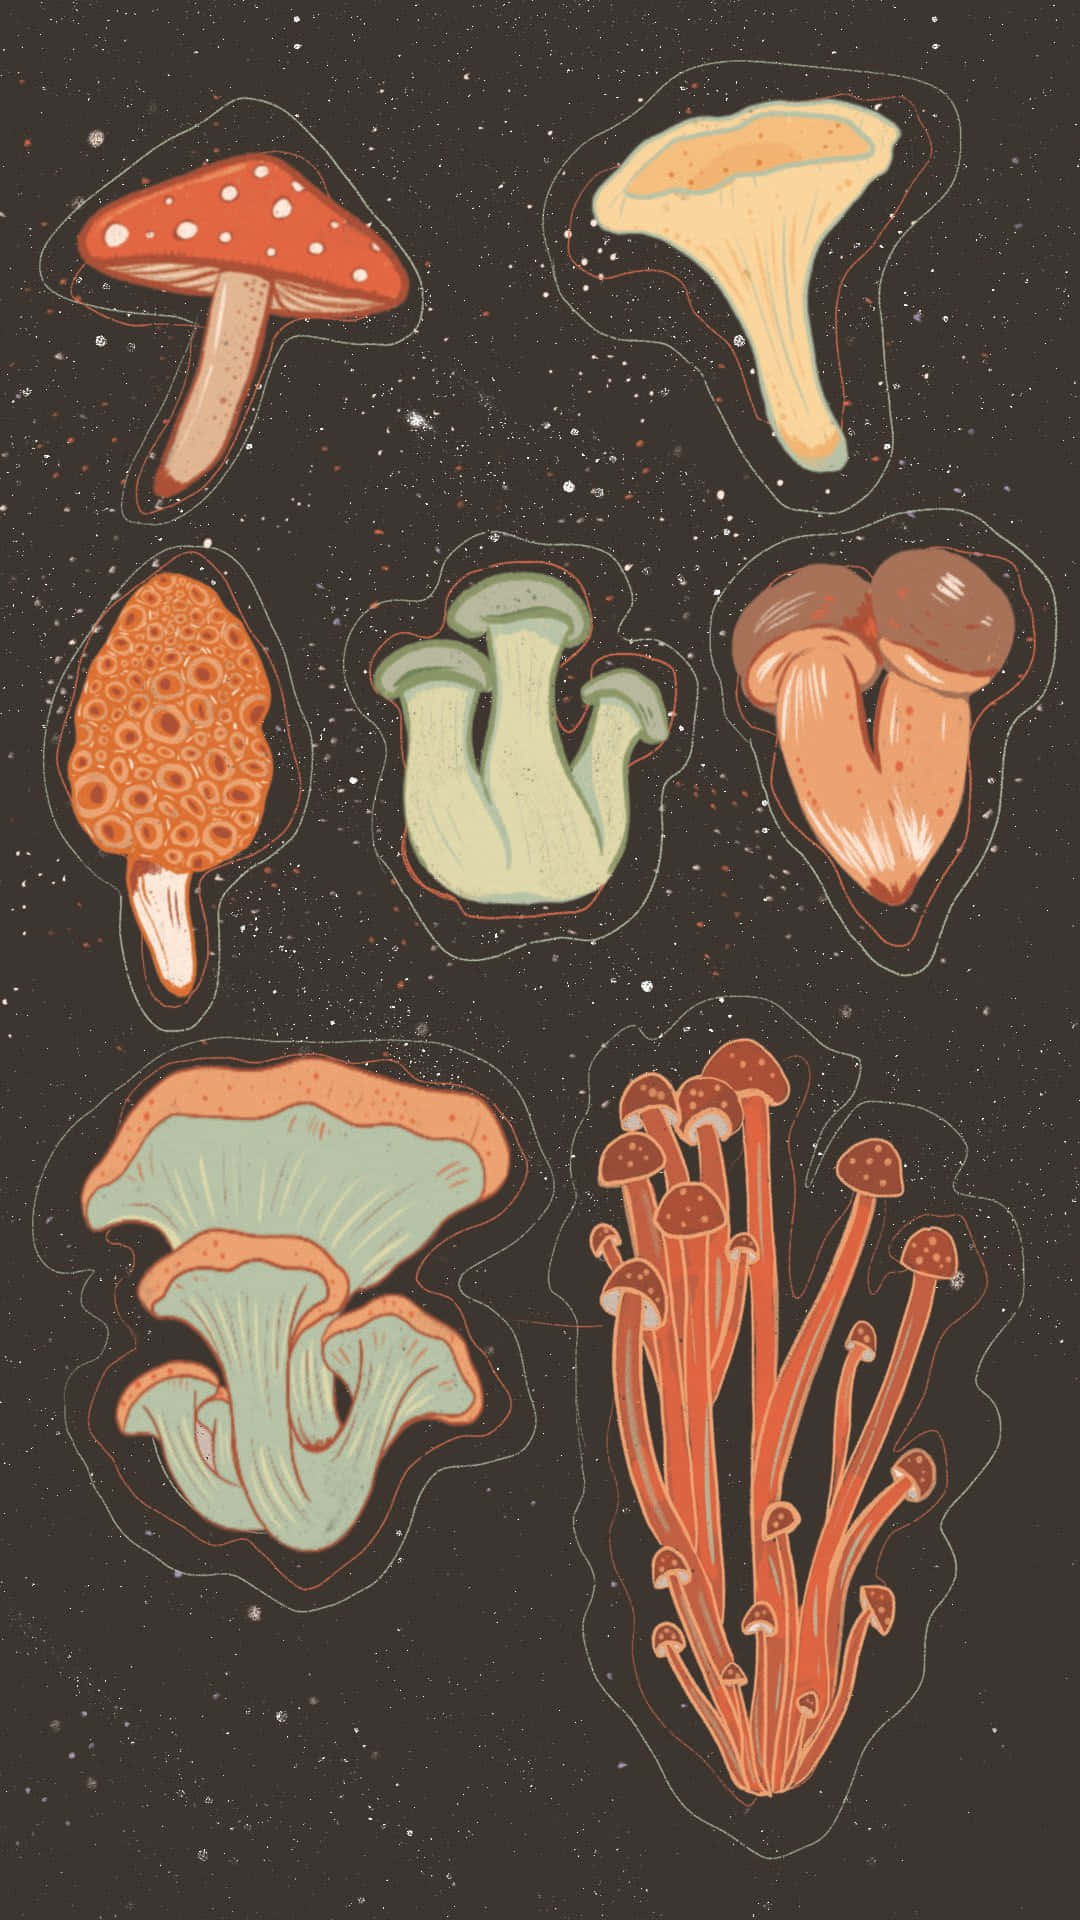 Anslutmed Vänner På Mushroom Phone! Wallpaper